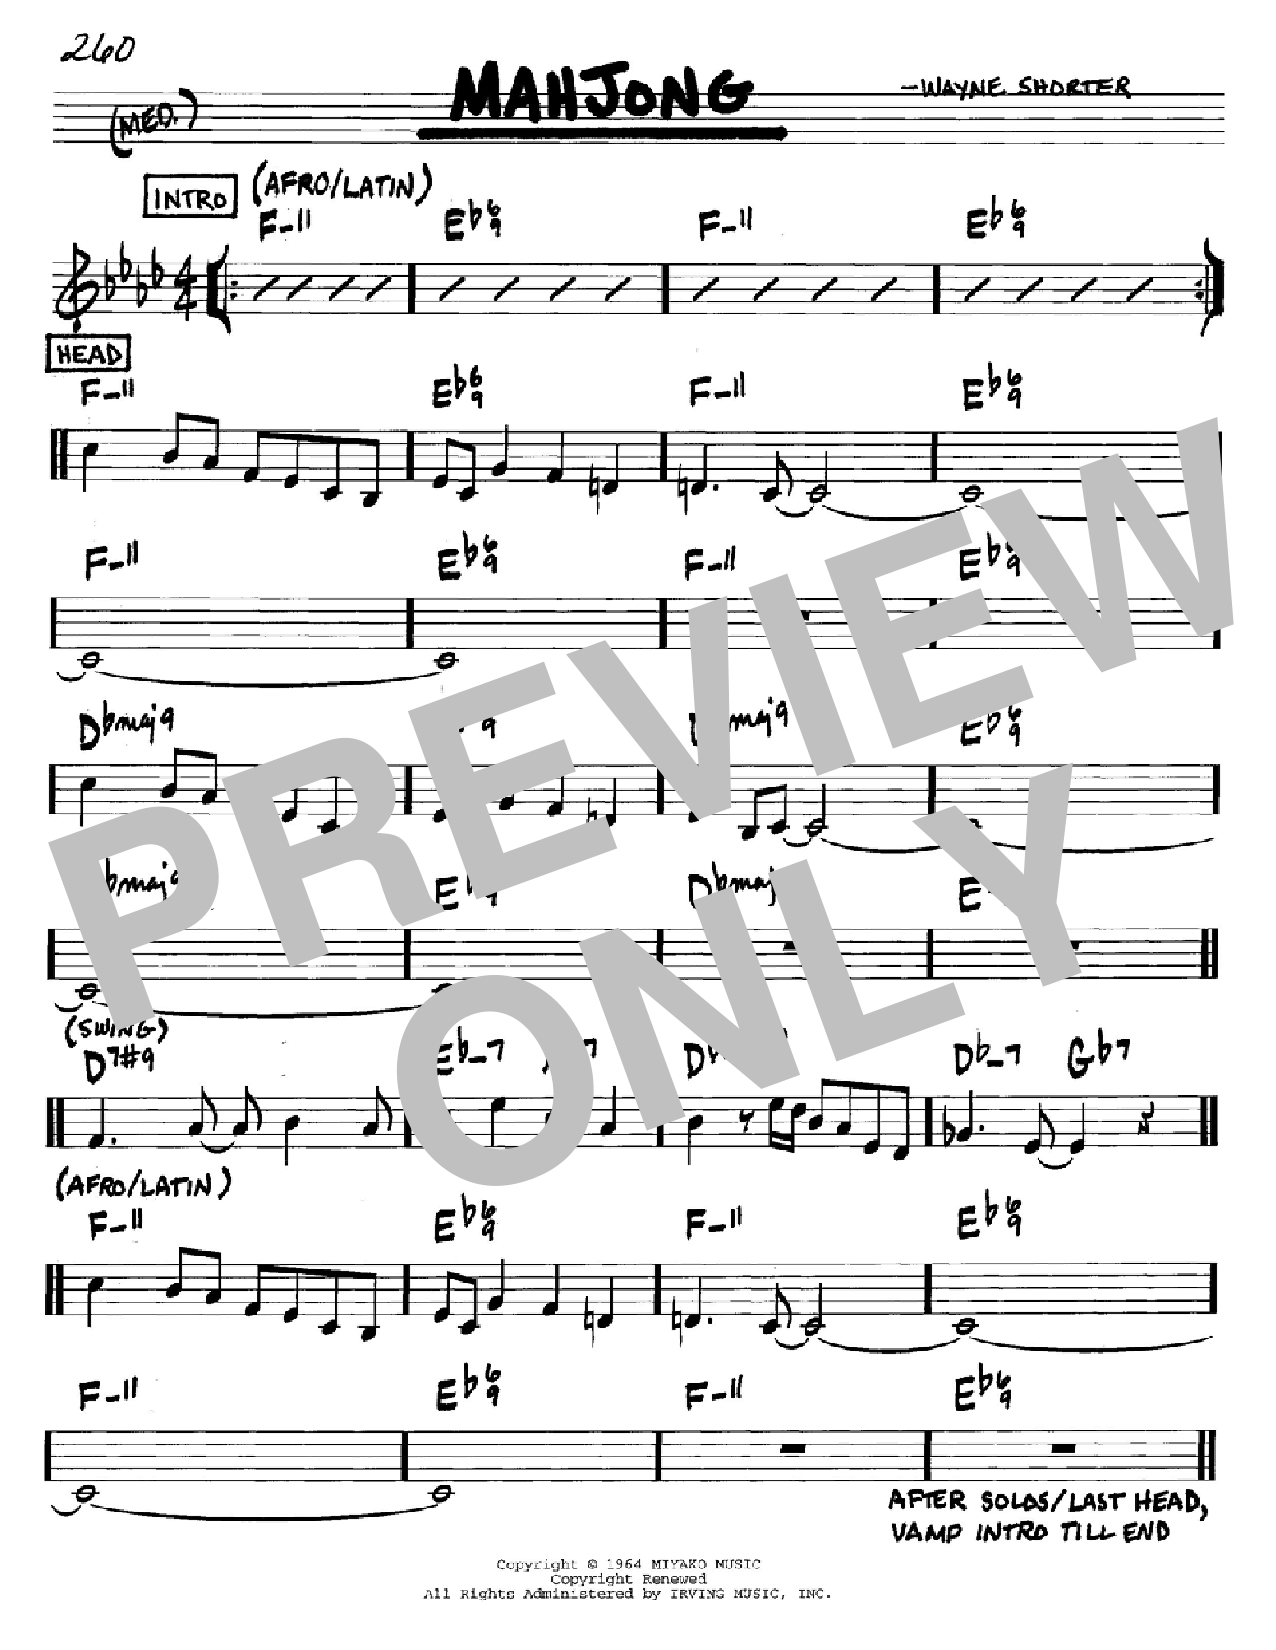 Wayne Shorter Mahjong Sheet Music Notes & Chords for Real Book - Melody & Chords - Bb Instruments - Download or Print PDF